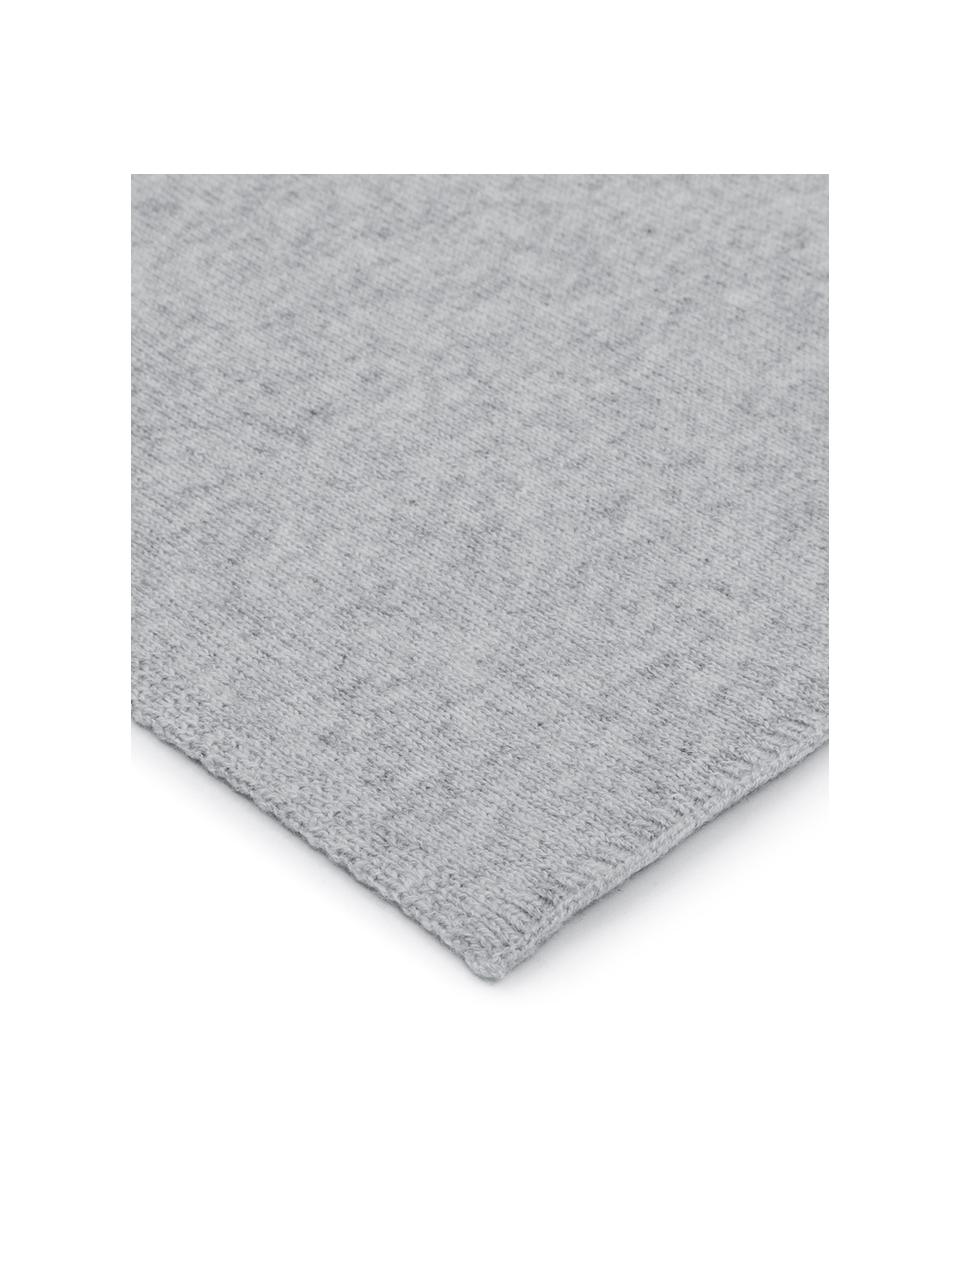 Plaid gris clair en cachemire à fine maille Viviana, 70 % cachemire, 30 % laine de mérinos, Gris clair, larg. 130 x long. 170 cm